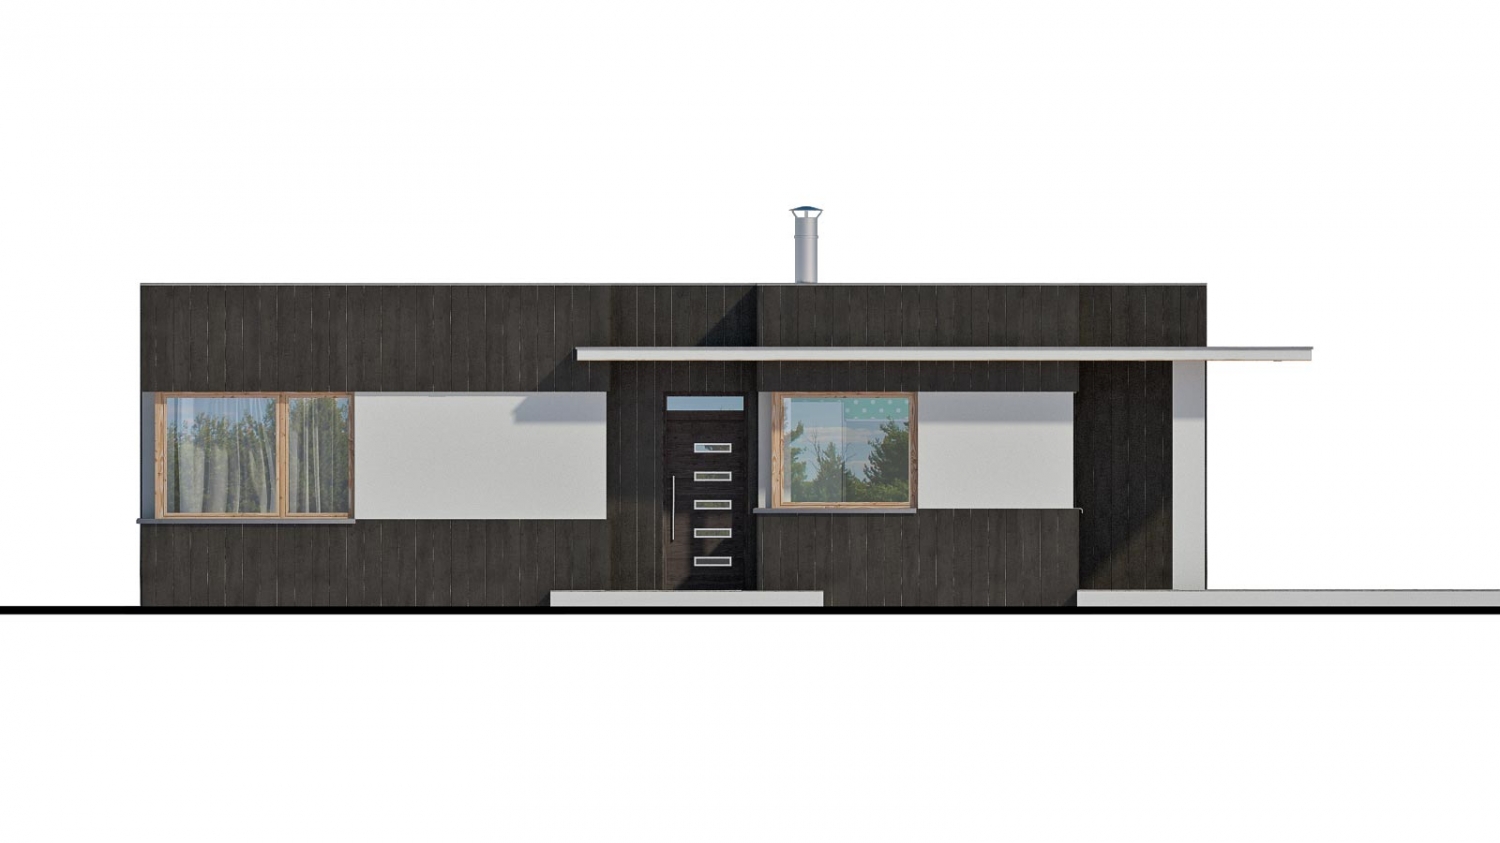 Pohľad 1. - Moderní malý projekt rodinného domu s plochou střechou na úzký pozemek. Na prosvětlení chodby slouží světlík Velux.